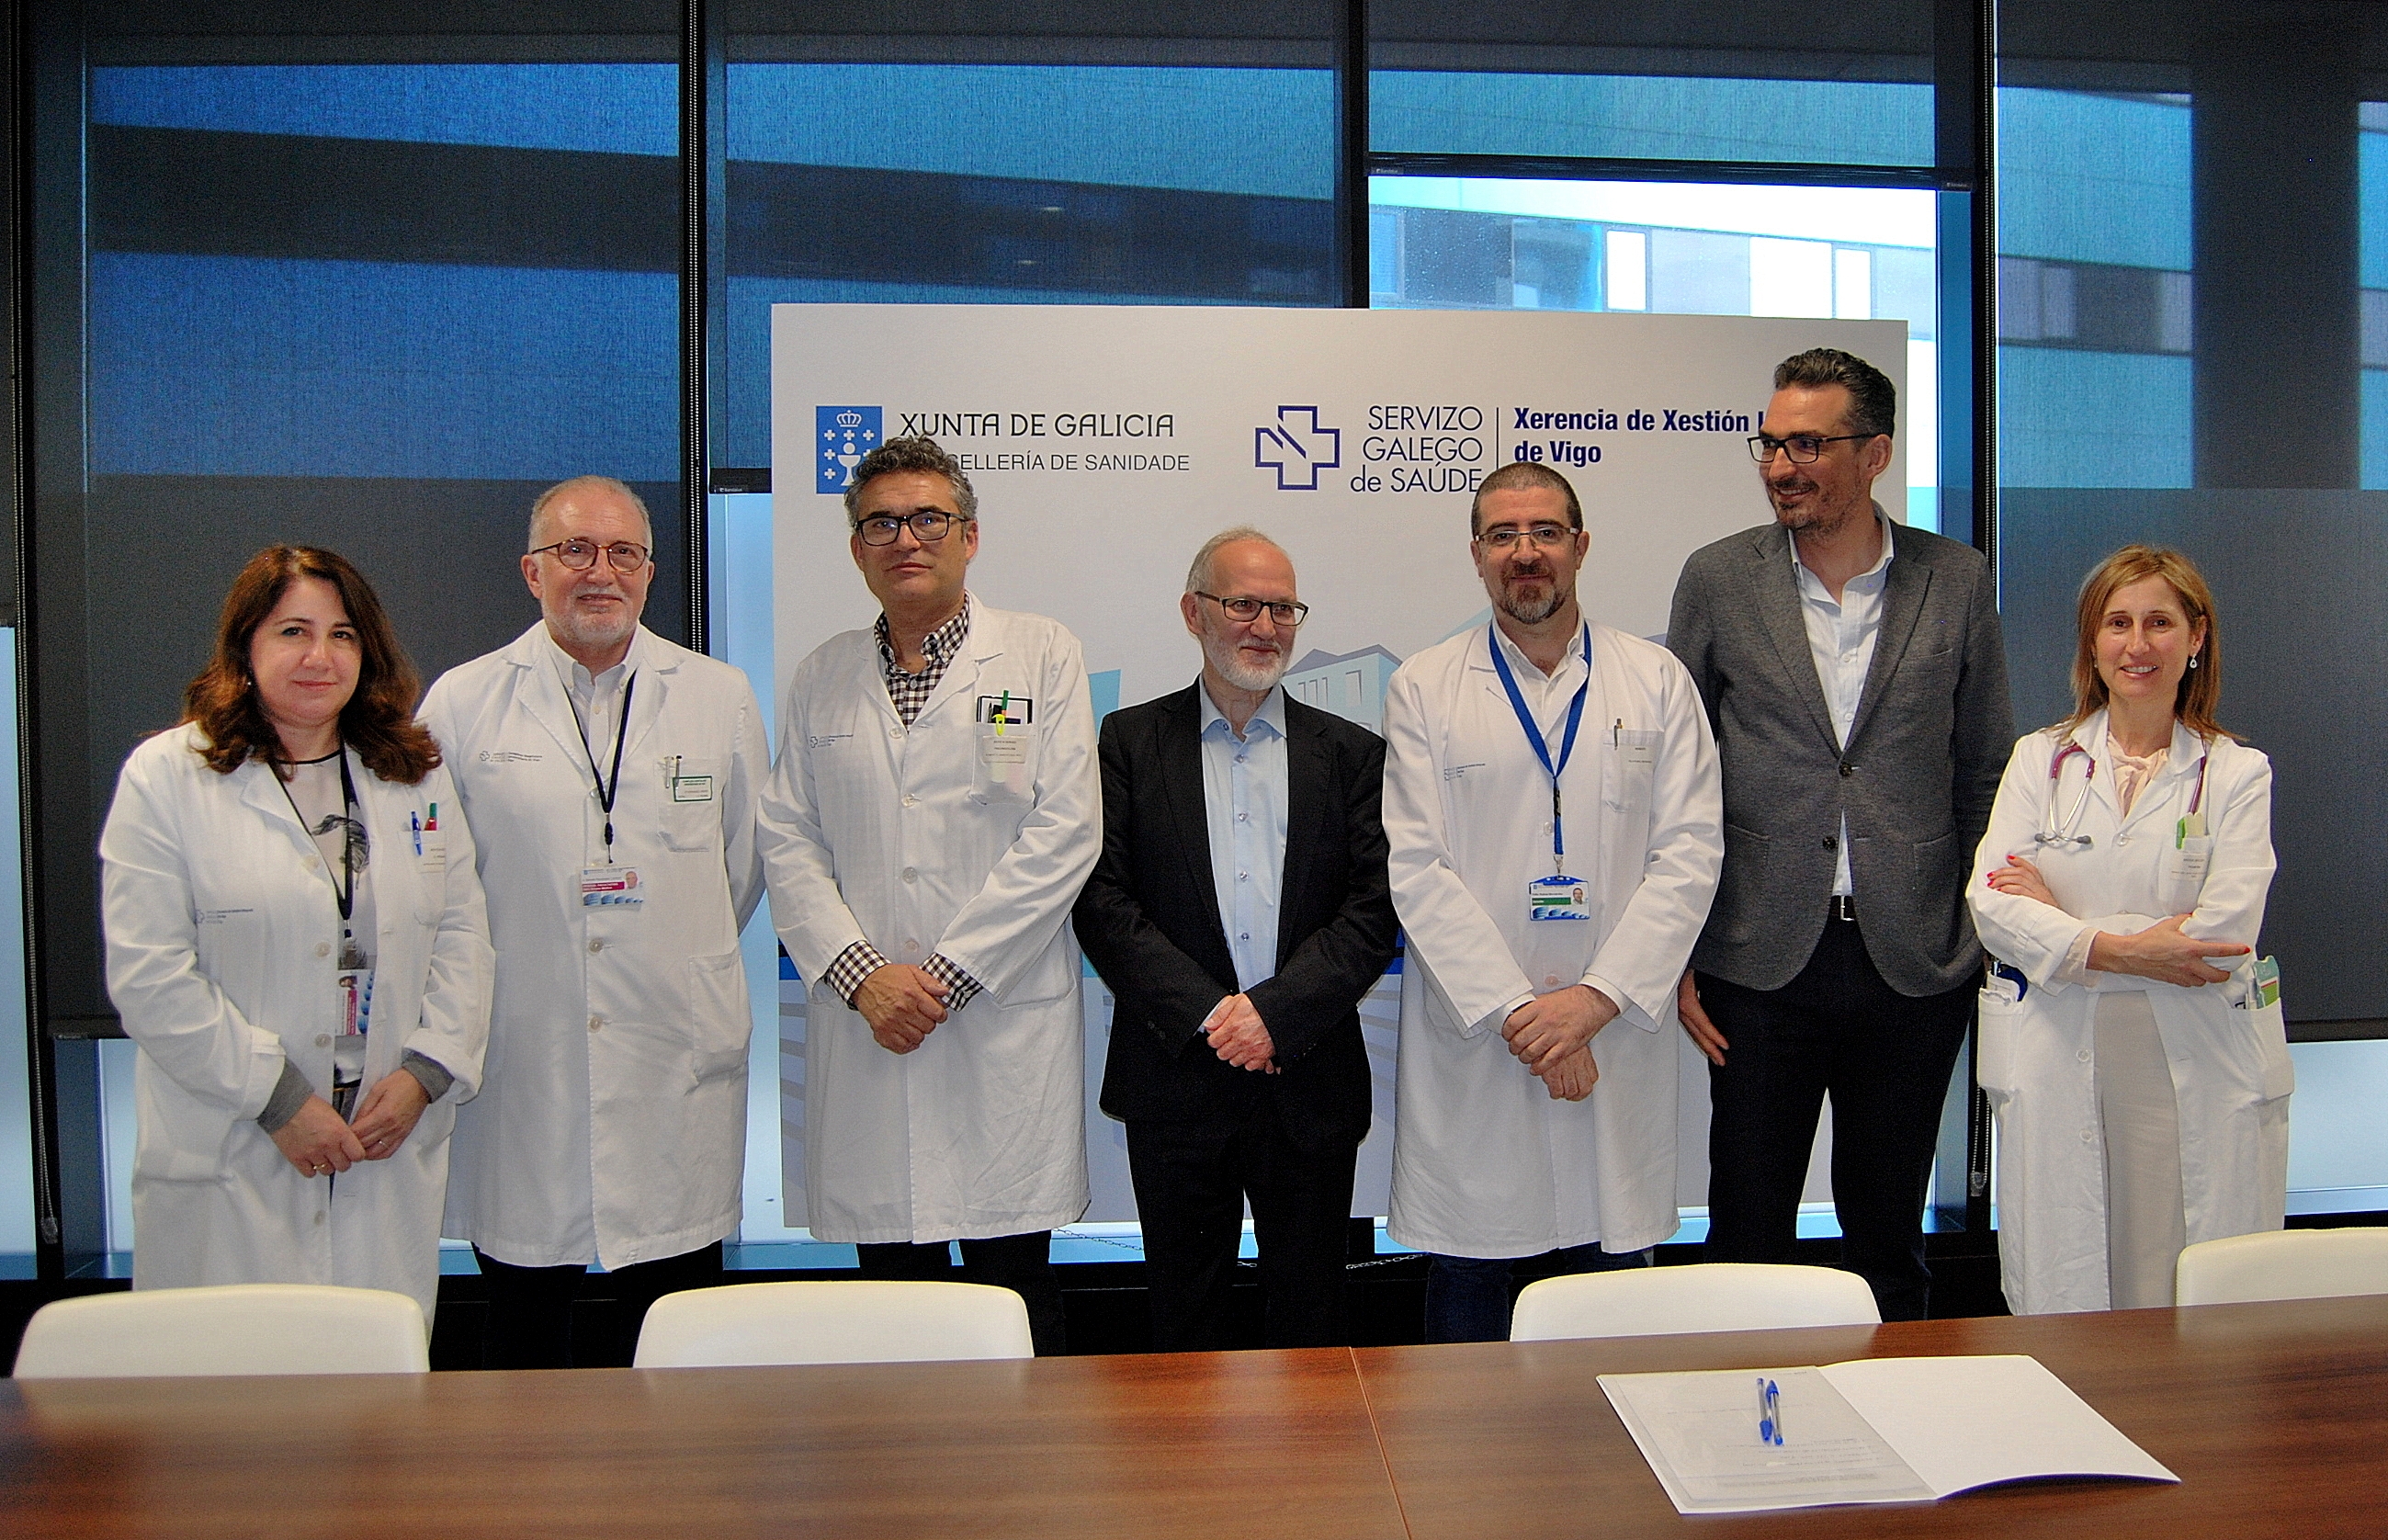 La firma de un acuerdo de colaboración con el Hospital Álvaro Cunqueiro permitirá el desarrollo de Viaje hacia la Vida en Vigo